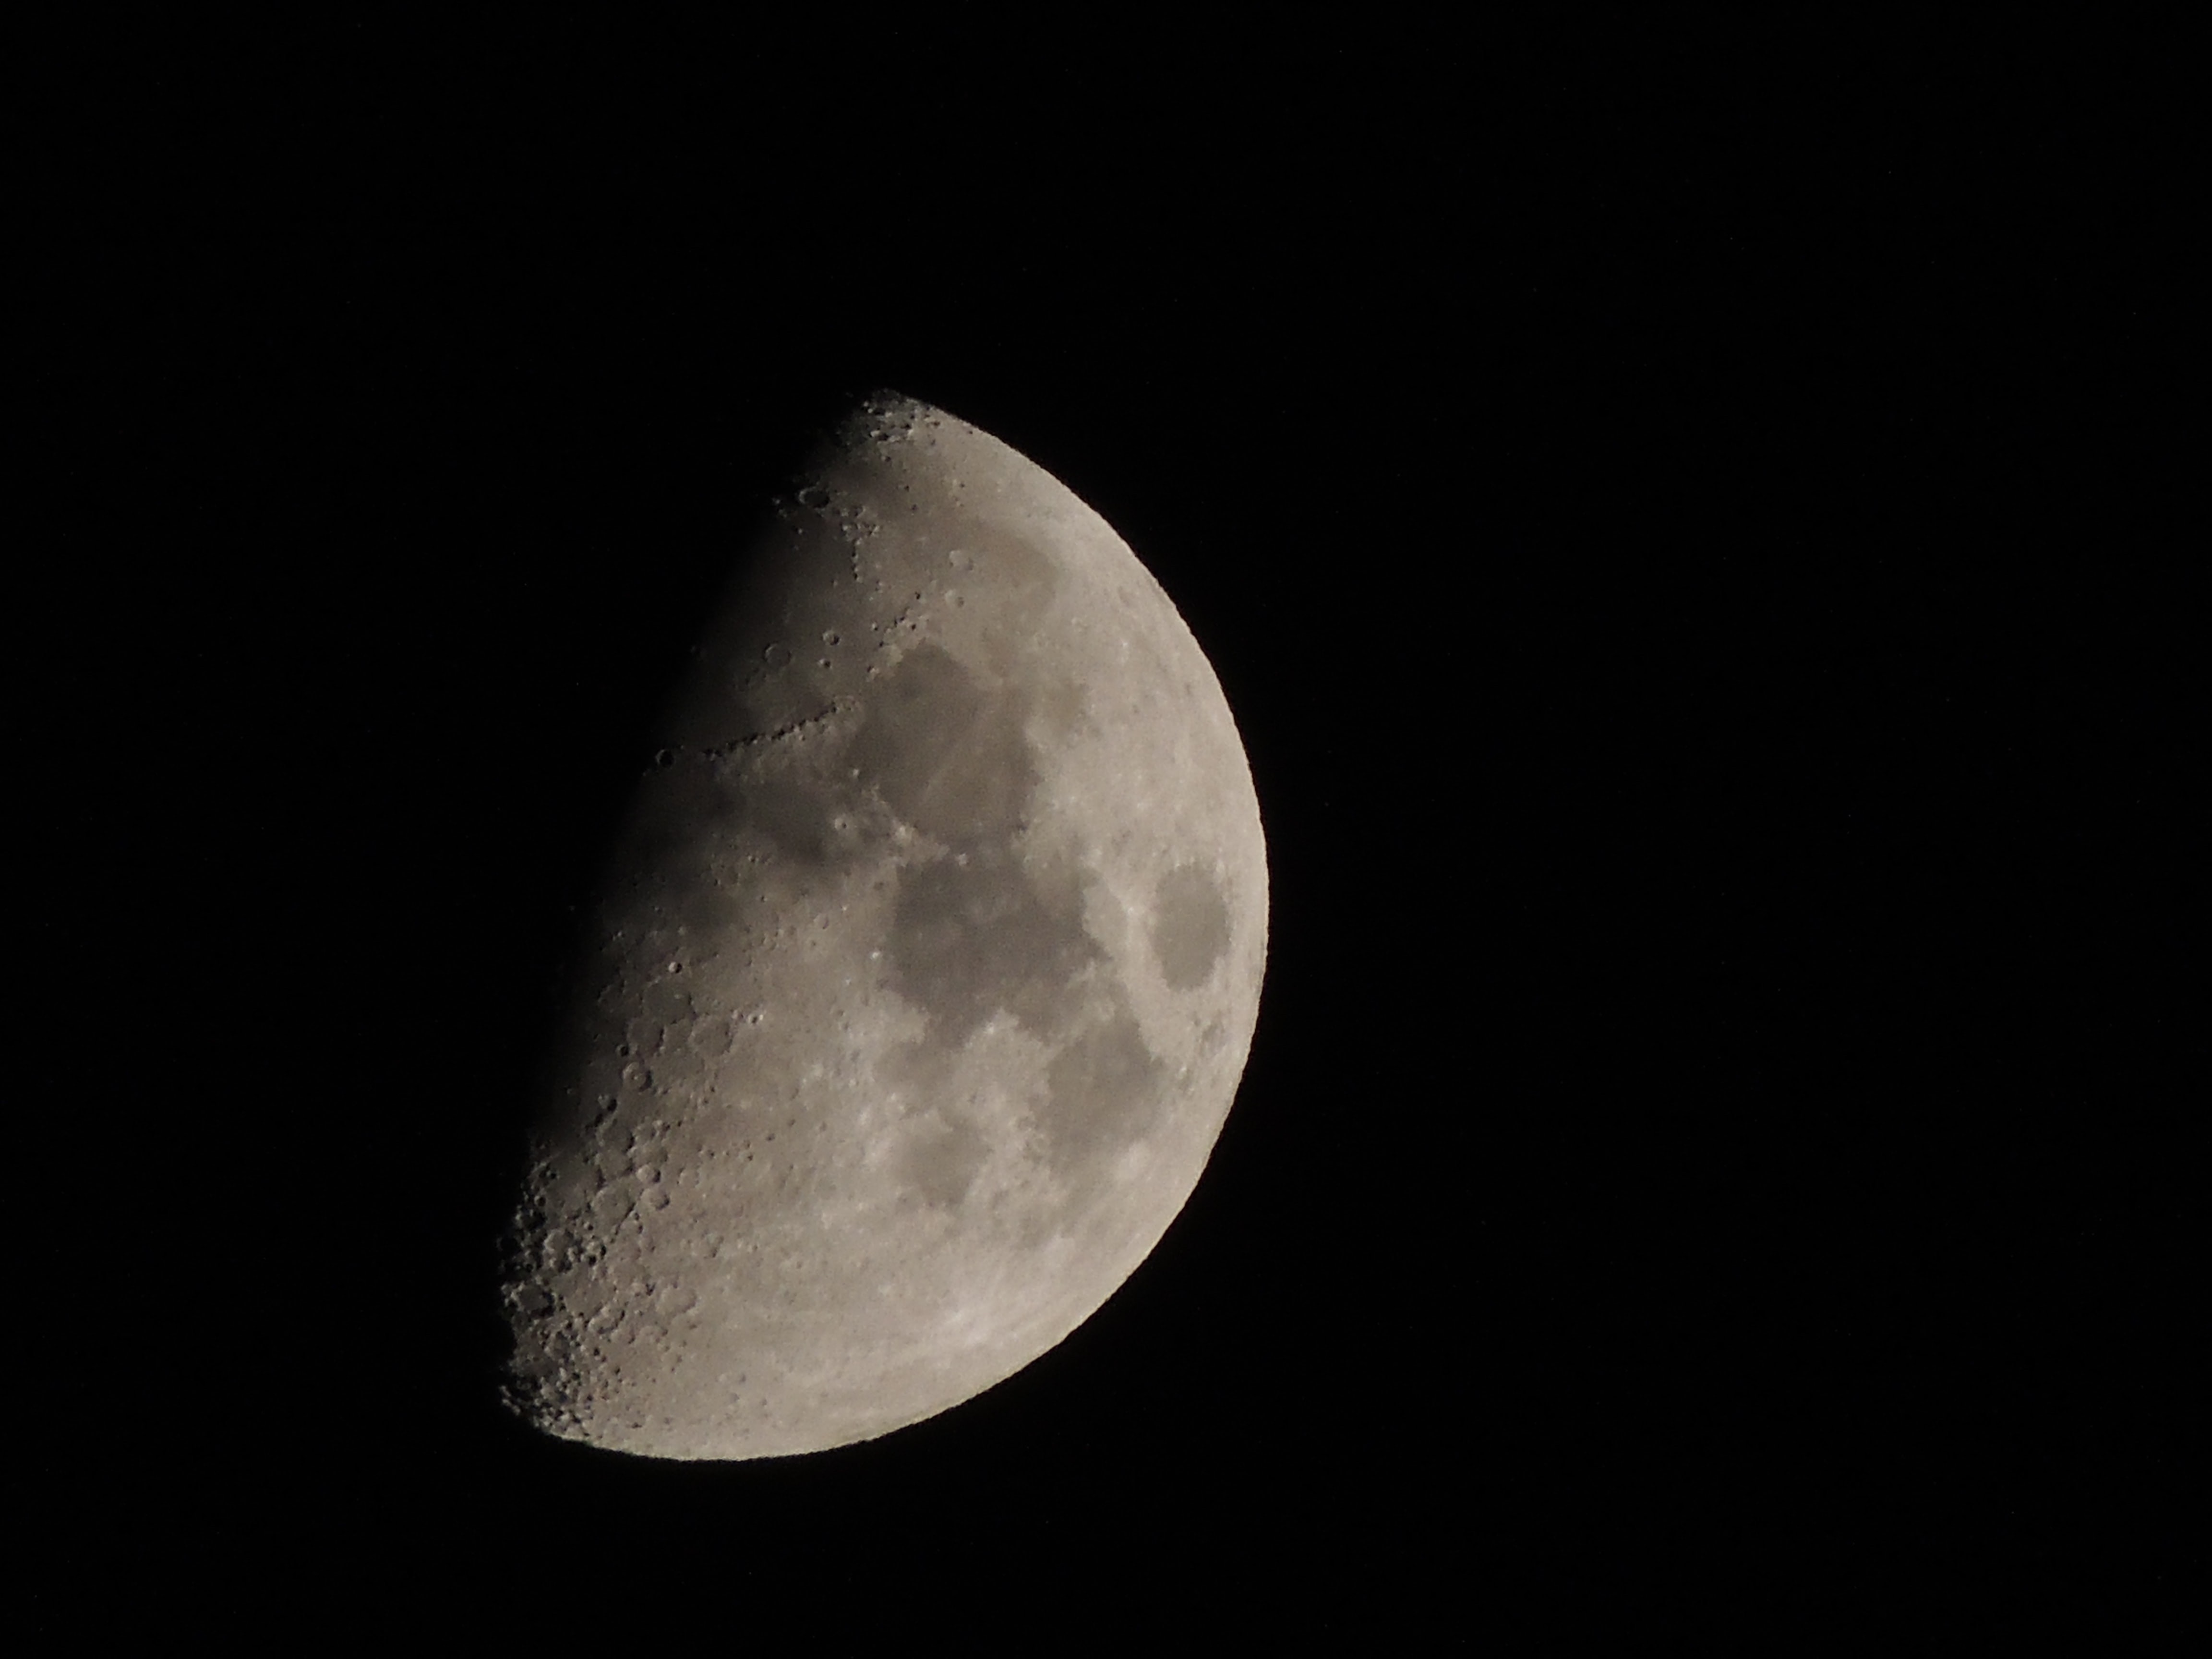 Fenômeno da Superlua acontece quando Lua chega ao ponto mais próximo da Terra (Foto: Unsplash)